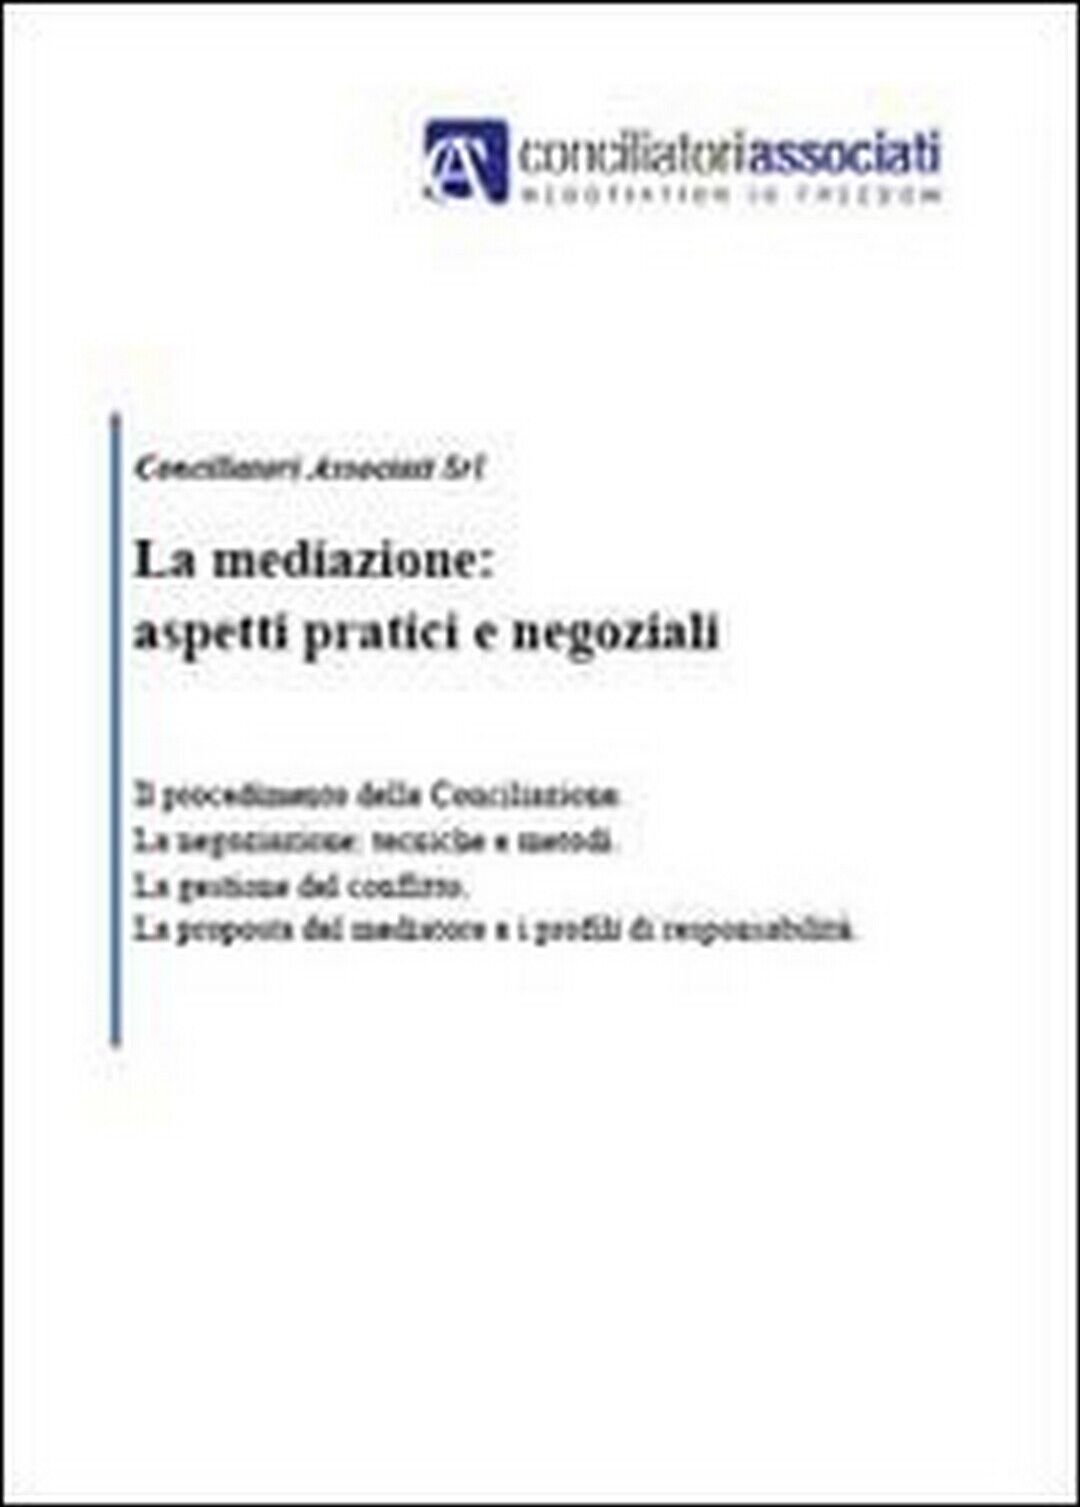 La mediazione: aspetti pratici e negoziali  di Aa. Vv.,  2011,  Youcanprint